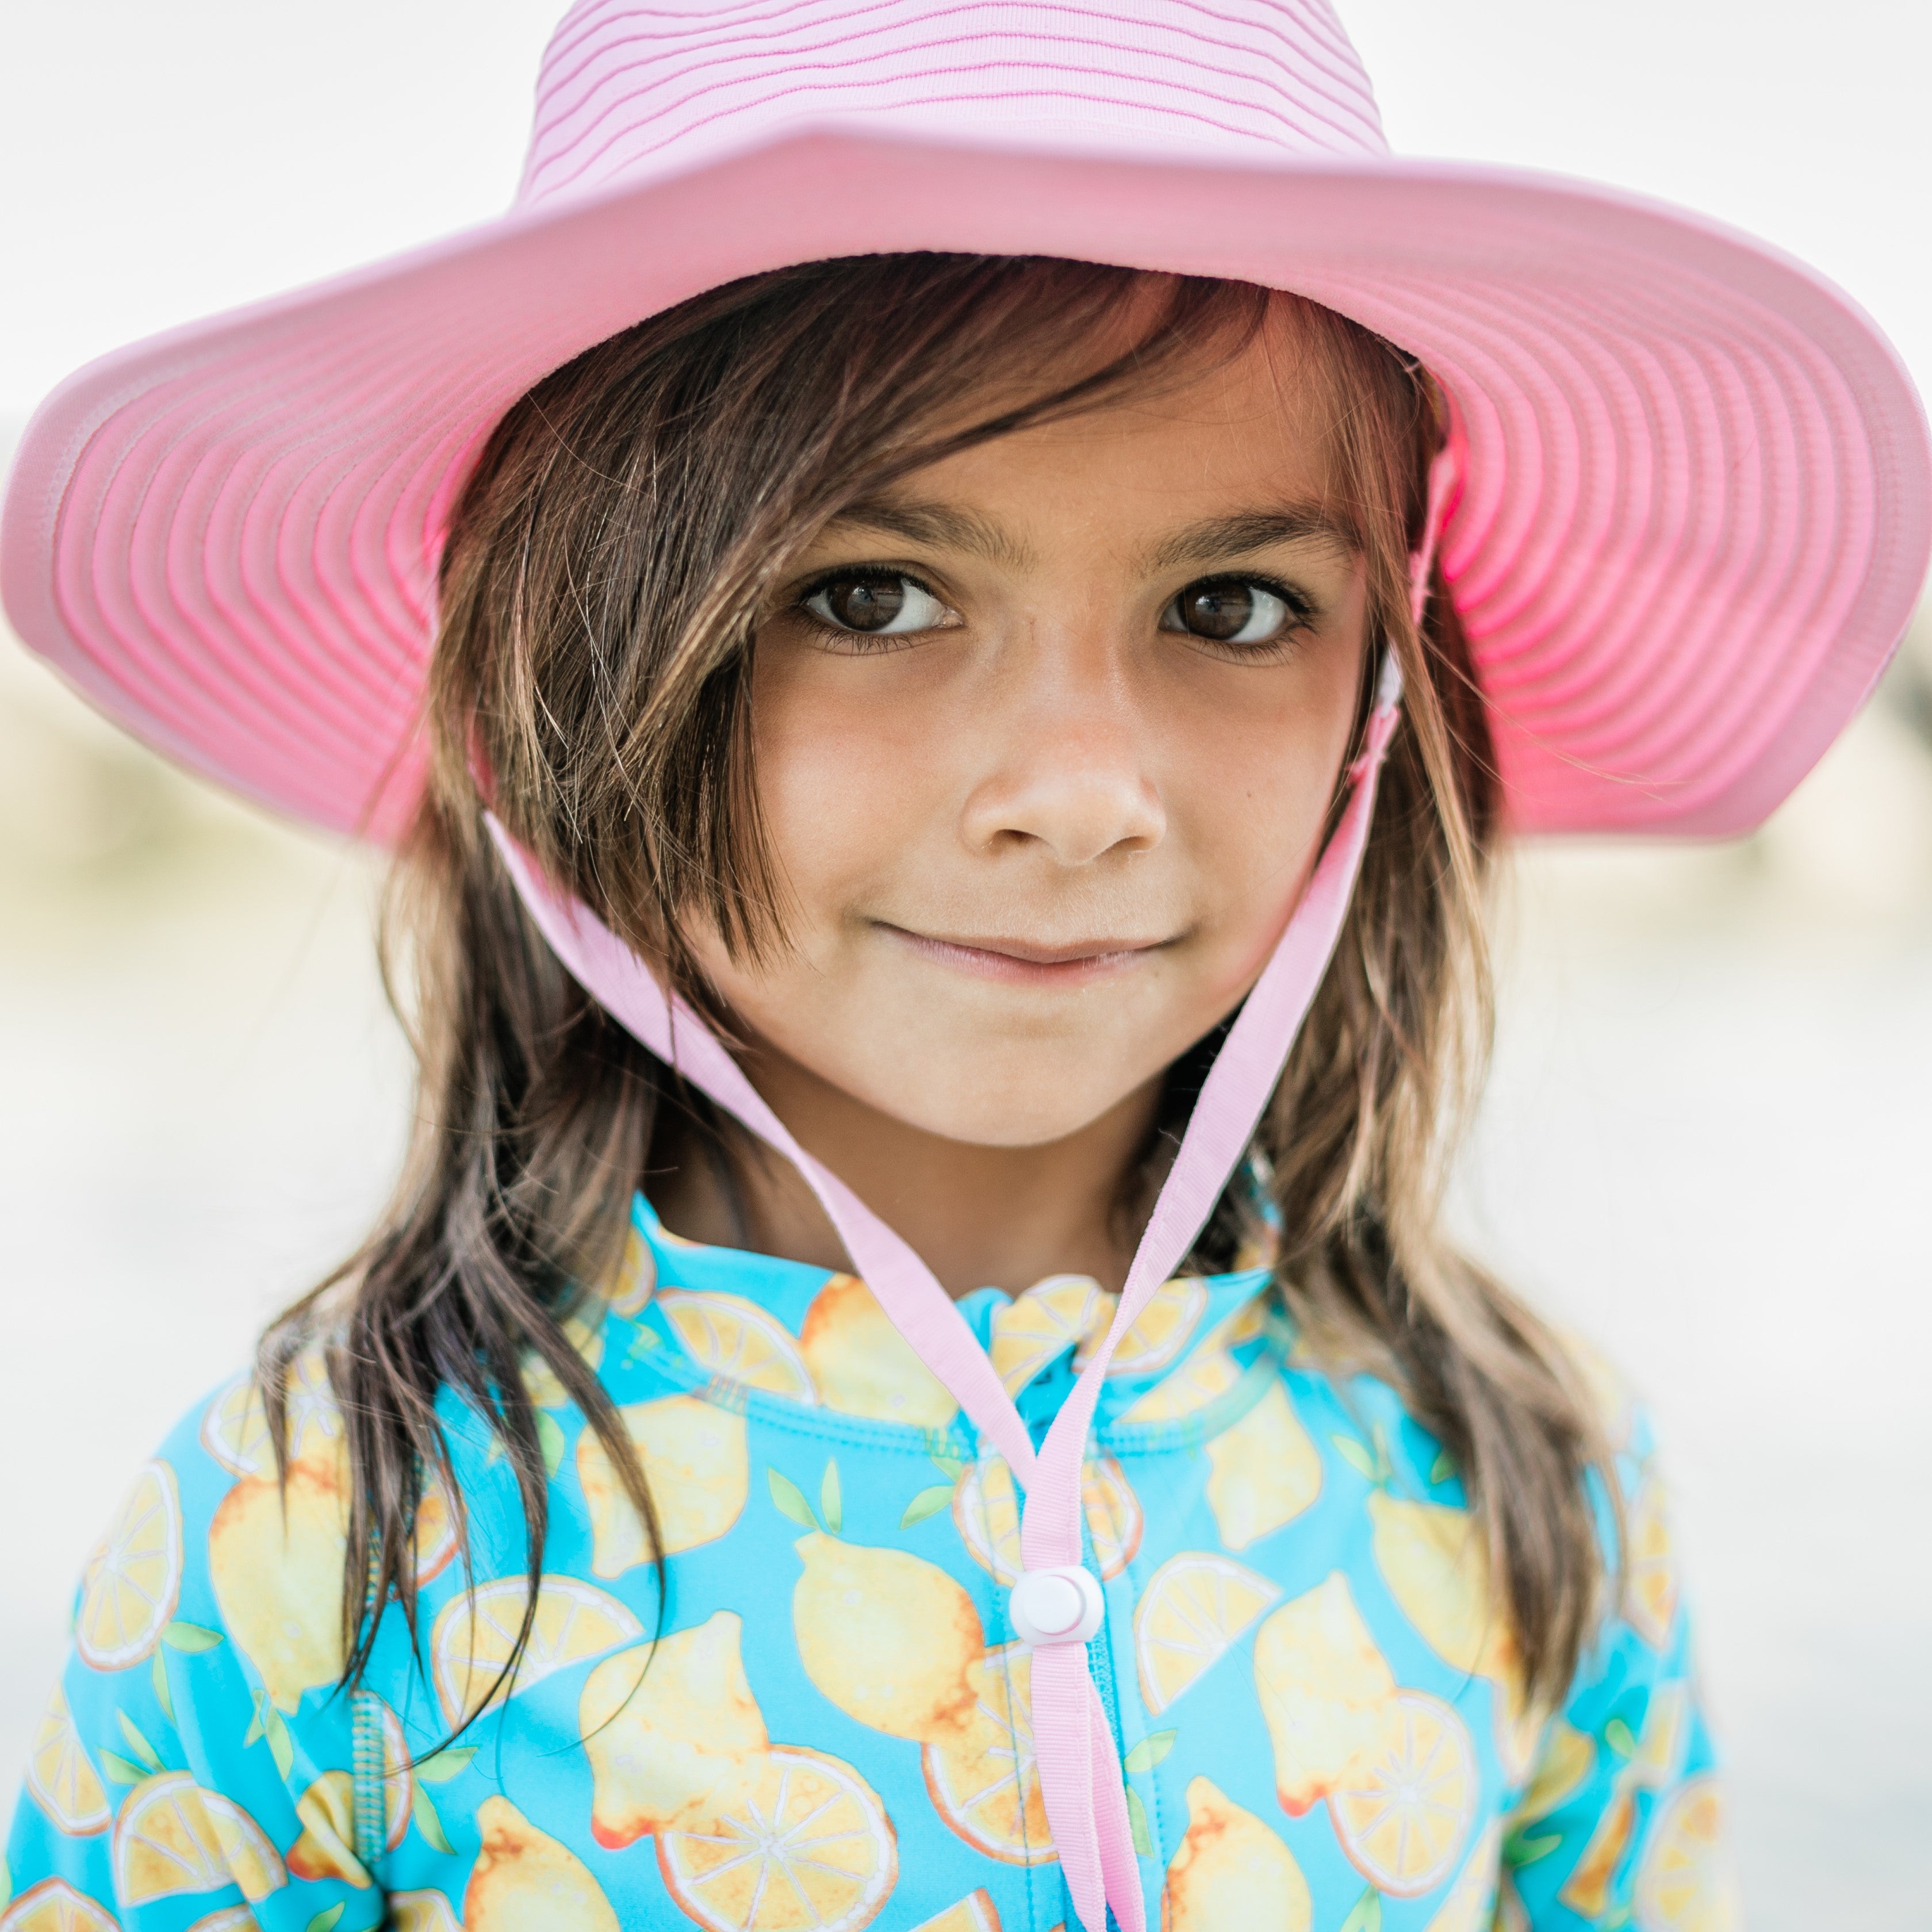 Muryobao Toddler Kids Baby Girls Boys Sun Hat Summer UPF 50+ UV Protection  Caps Wide Brim Neck Flap Beach Play Fishing Hats White 3-7 Years 